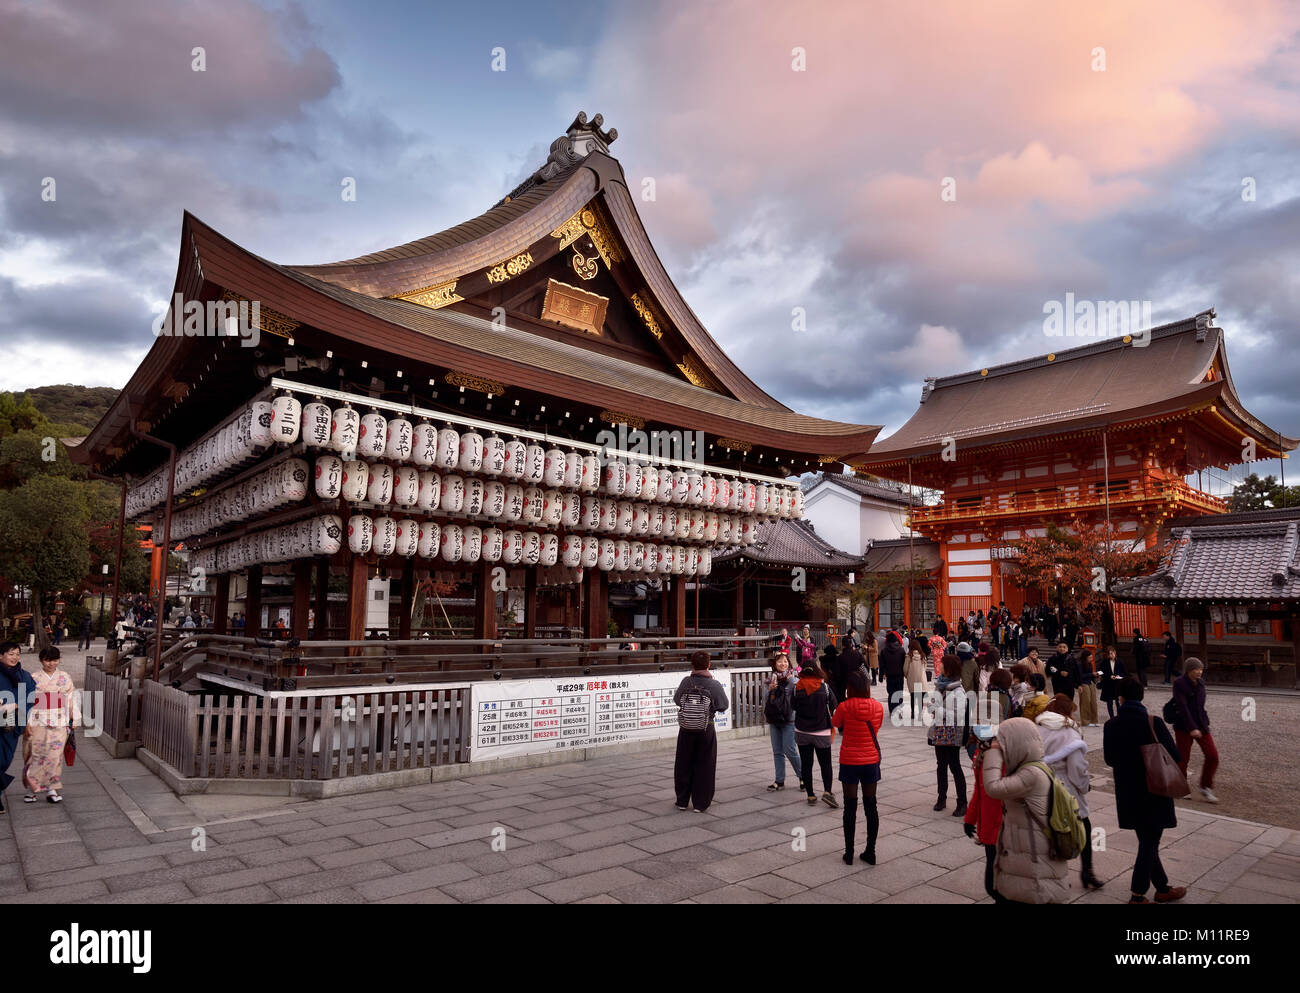 Licencia disponible en MaximImages.com - Santuario de Yasaka, escenario principal de Yasaka-jinja en el atardecer de otoño, santuario sintoísta japonés distrito de Gion, Kioto, Japón Foto de stock